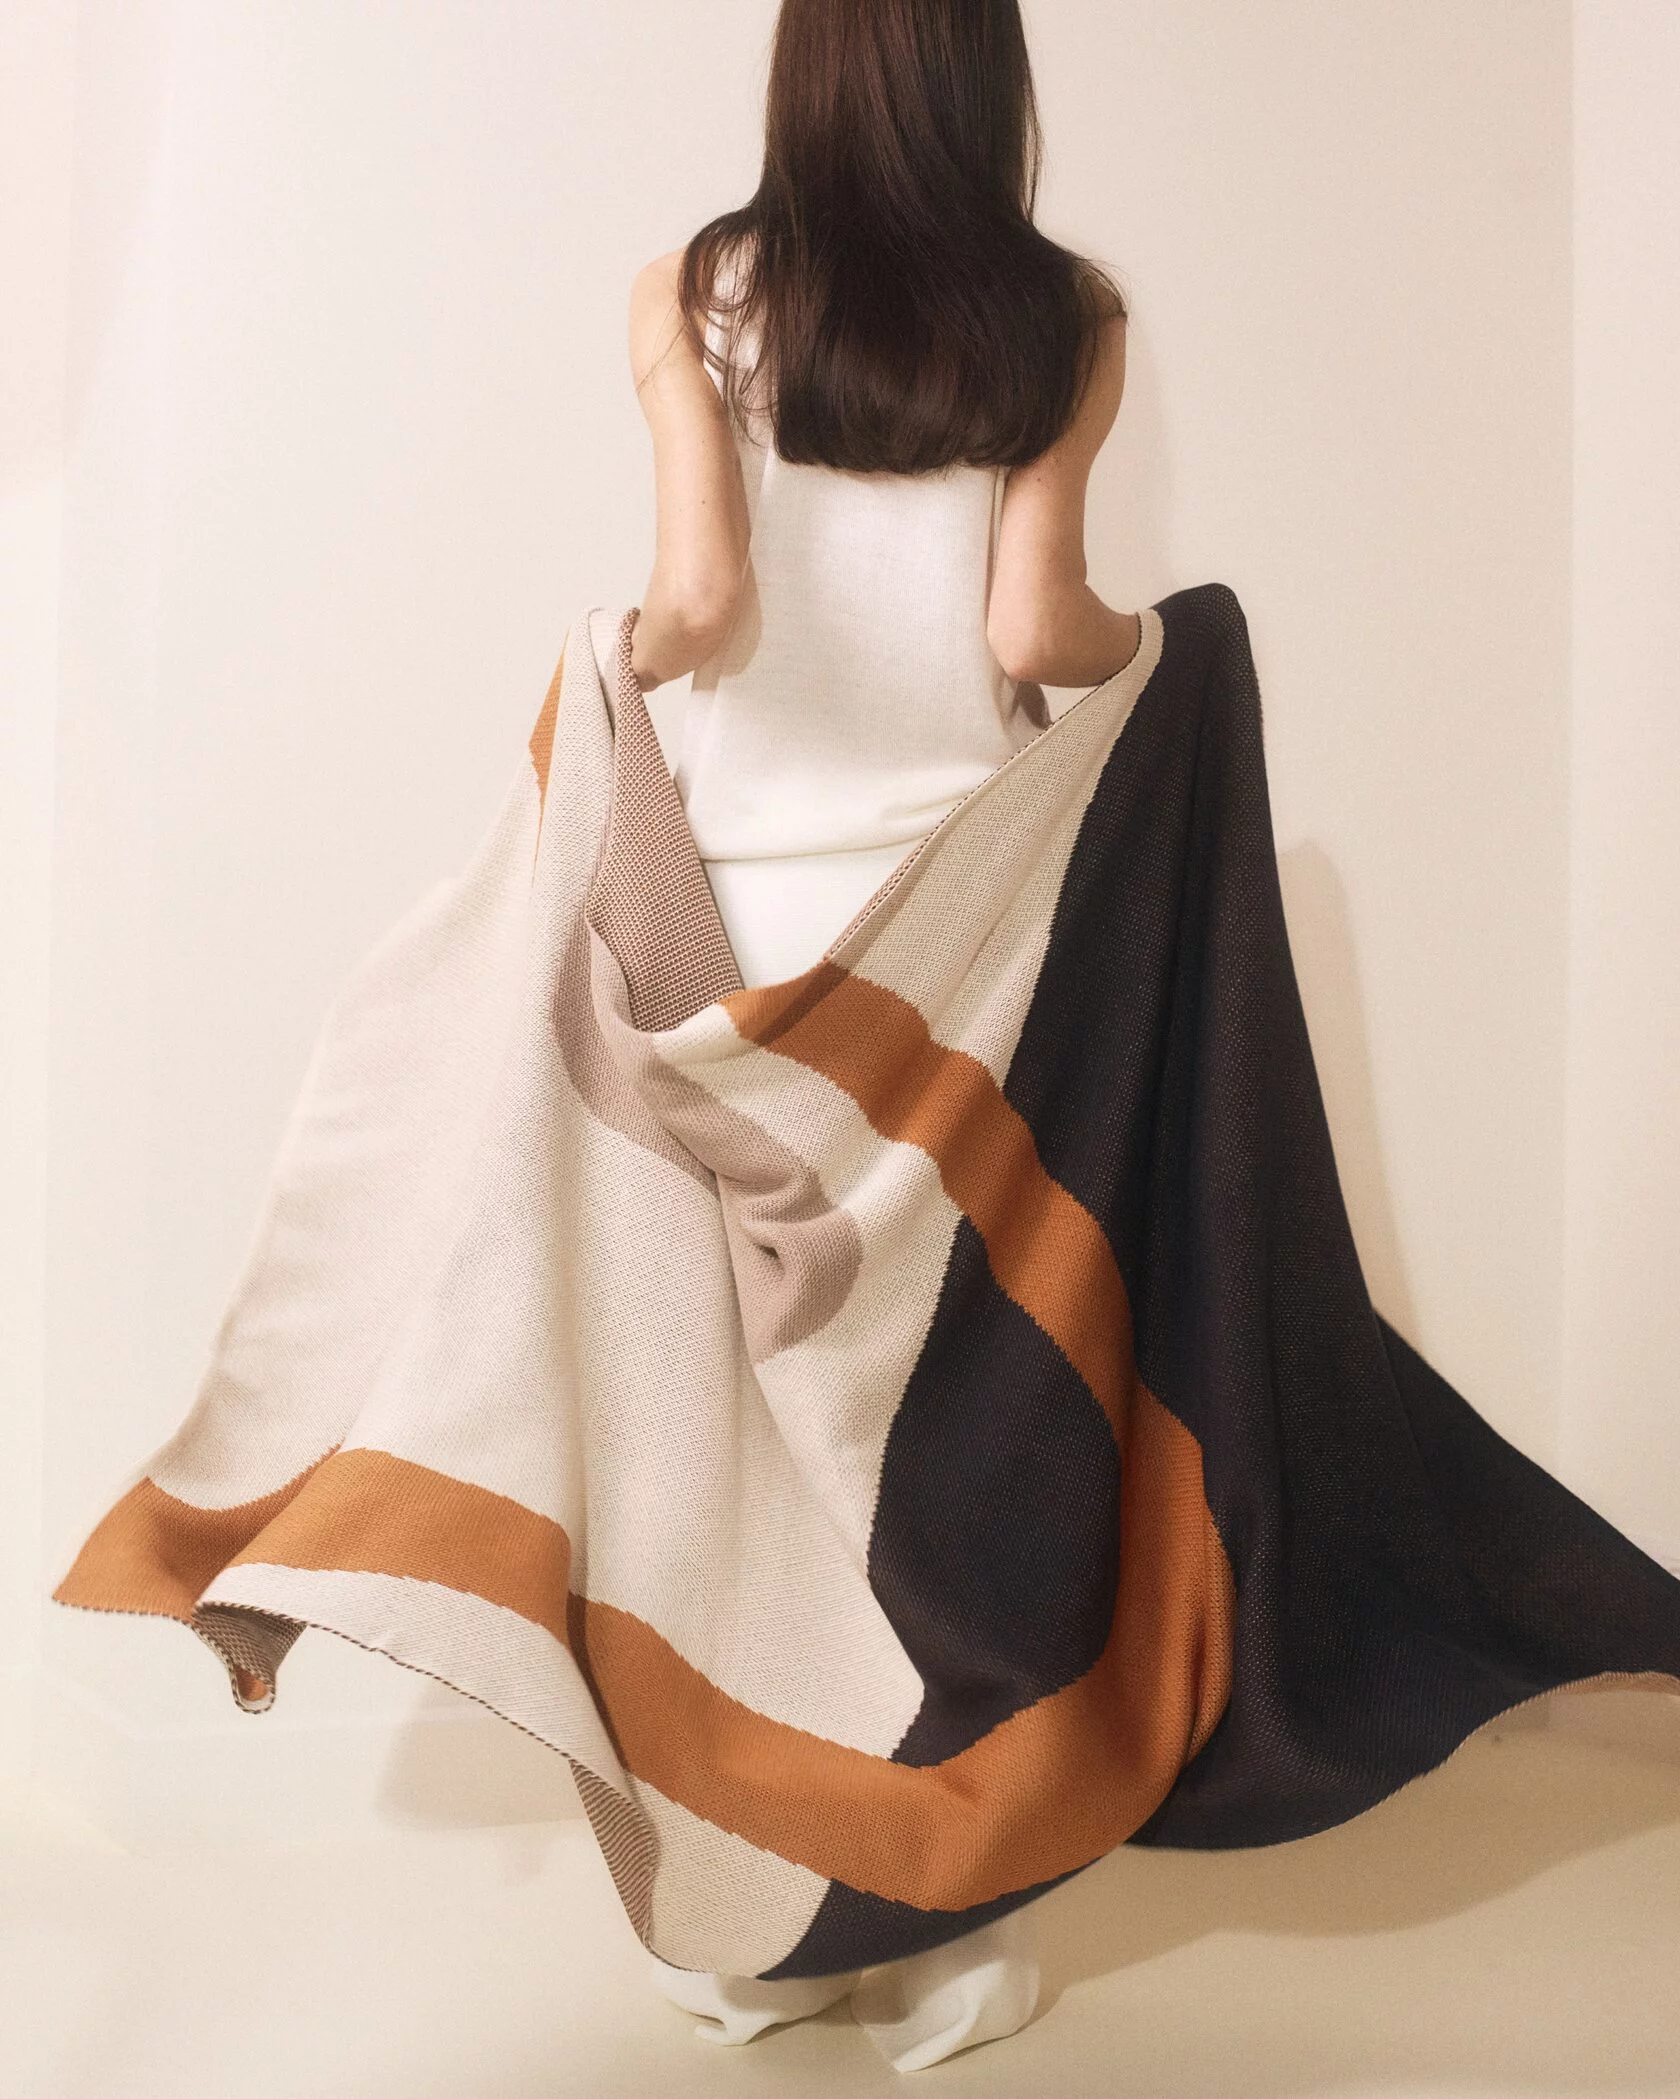 Бренд премиального трикотажа Lyna+ выпустил коллекцию домашнего текстиля (фото 9)